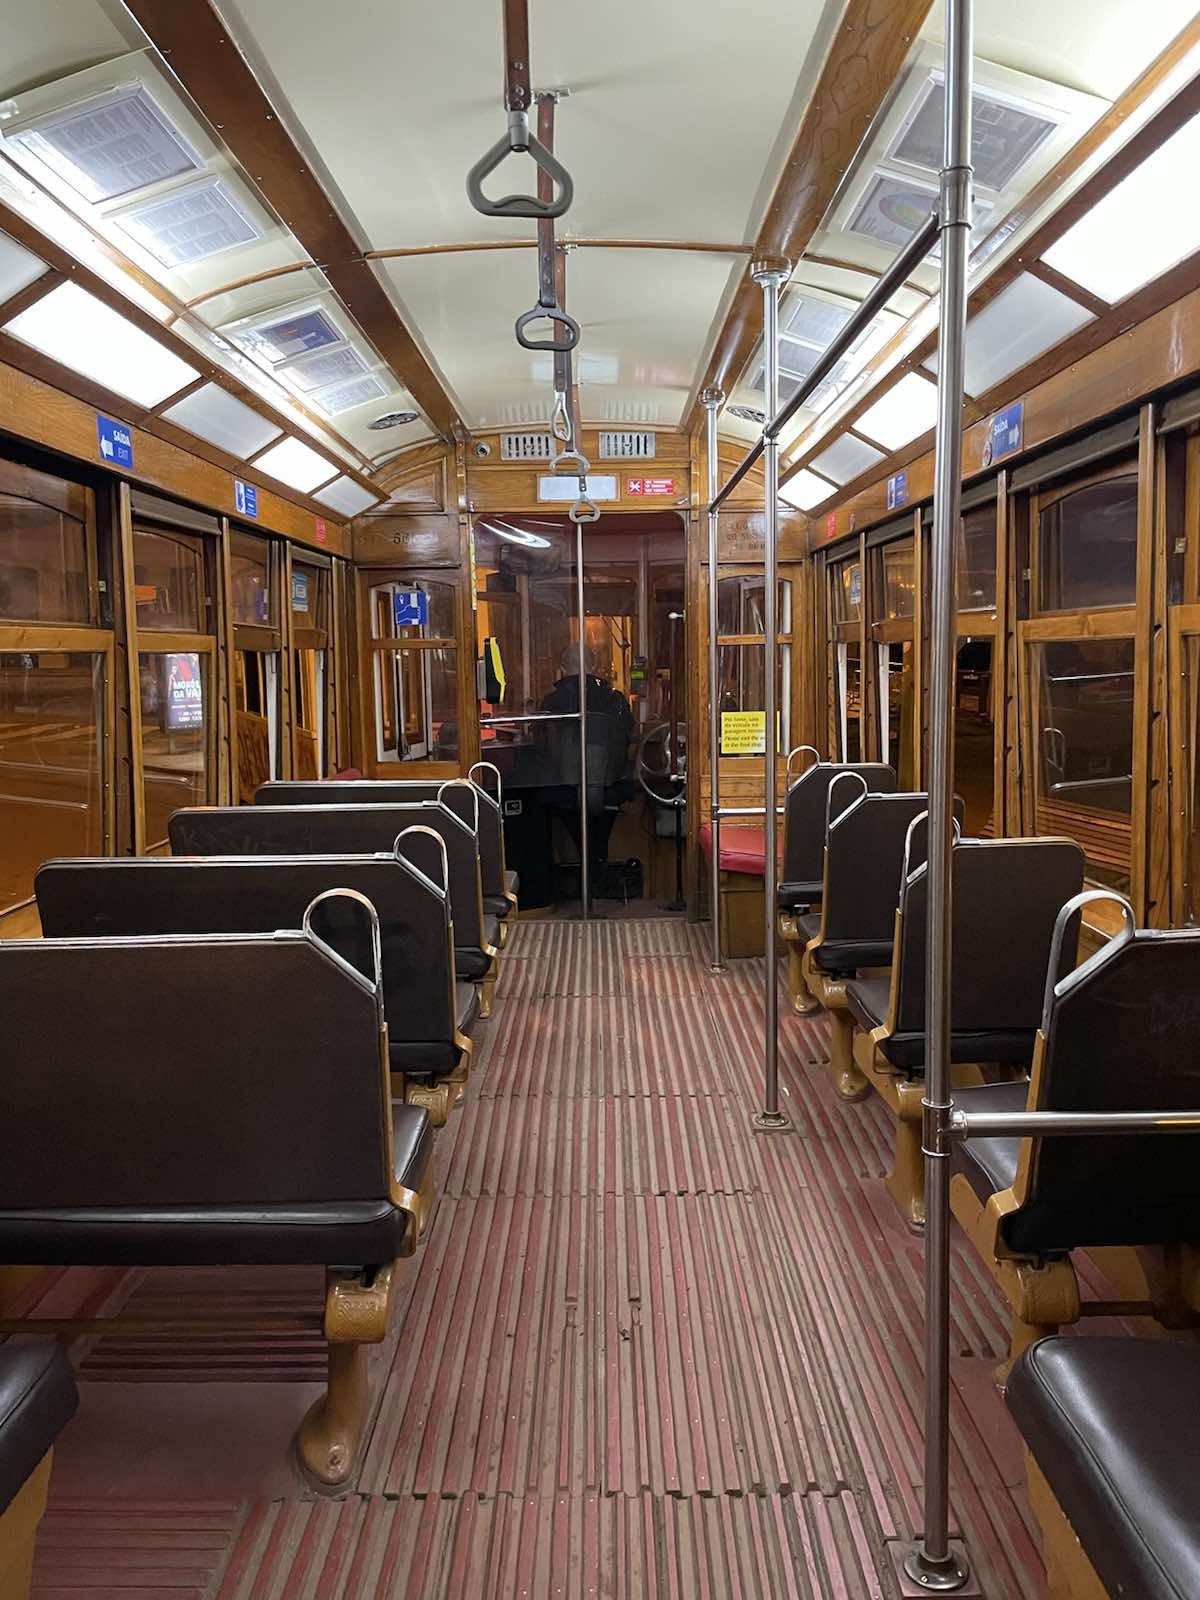 Μέσα στο τραμ της Λισαβόνας